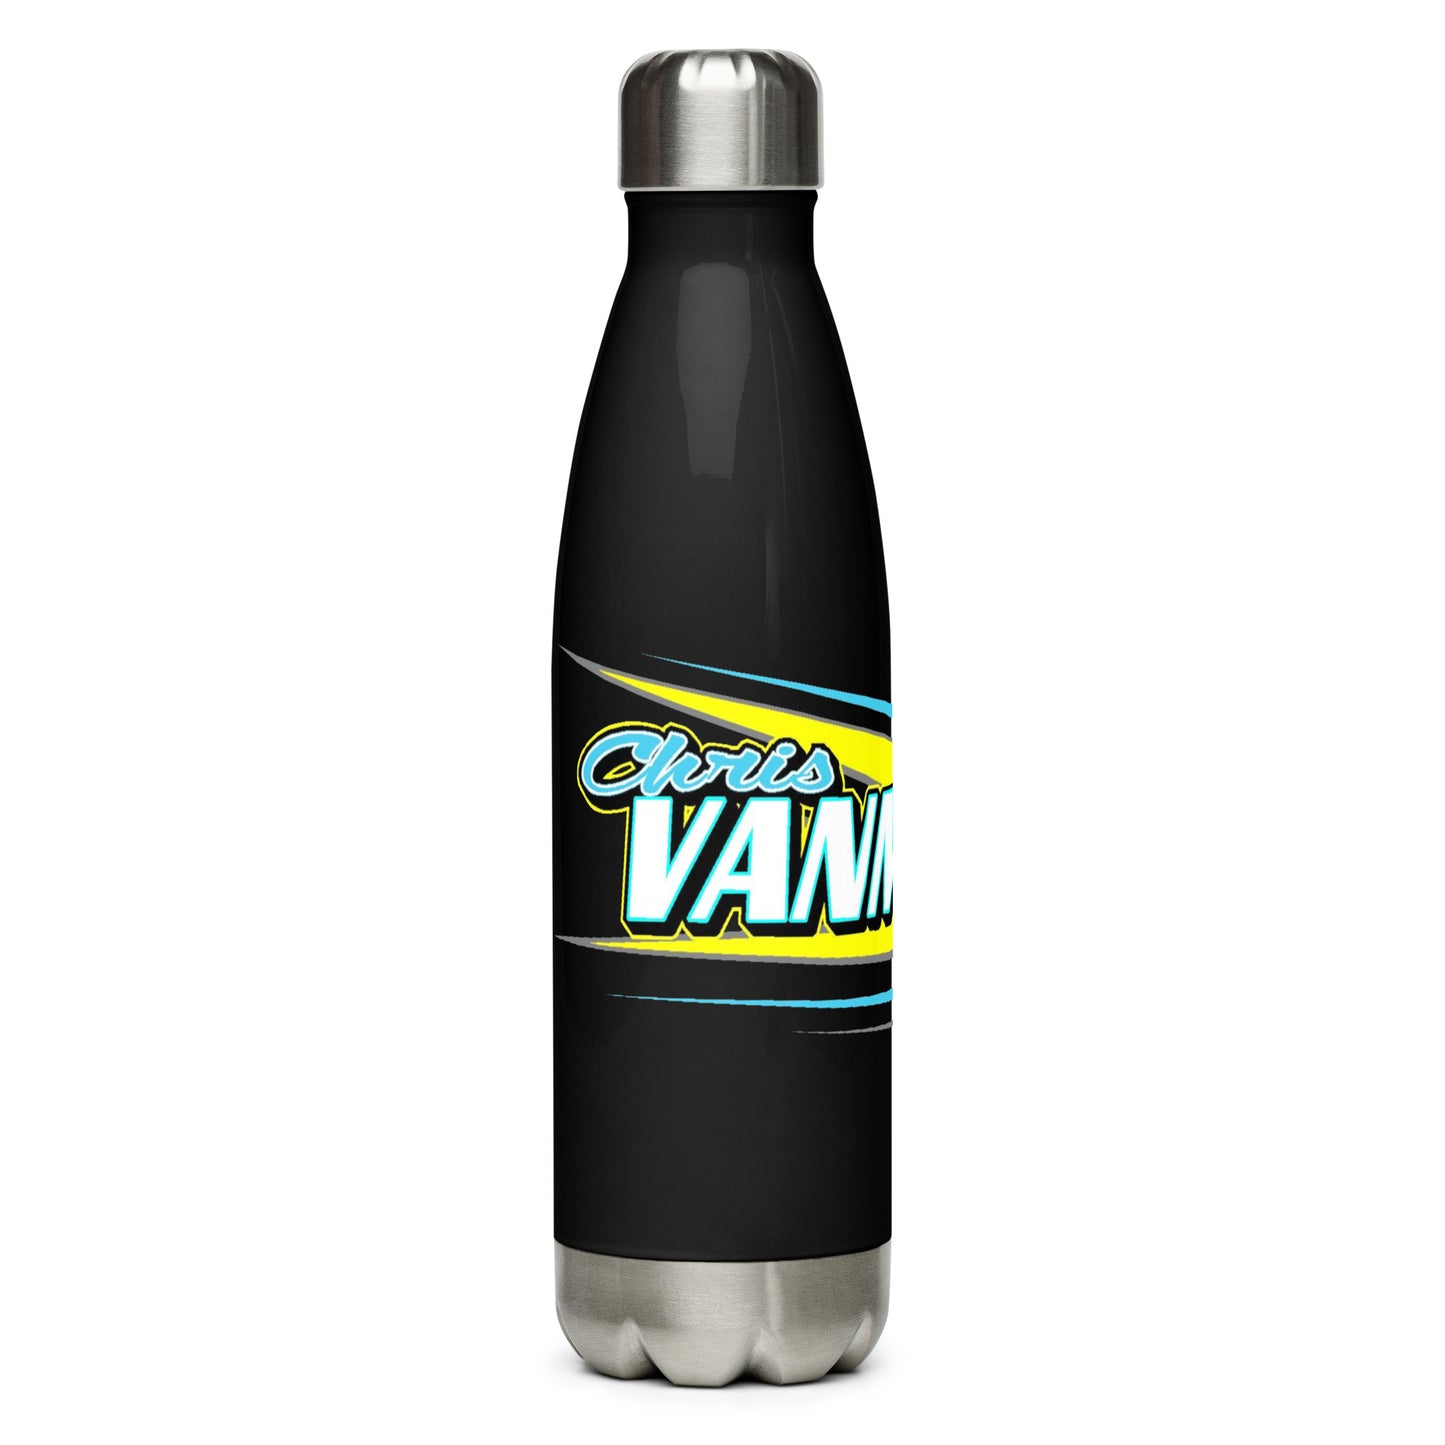 Chris Vanmil Stainless Steel Water Bottle